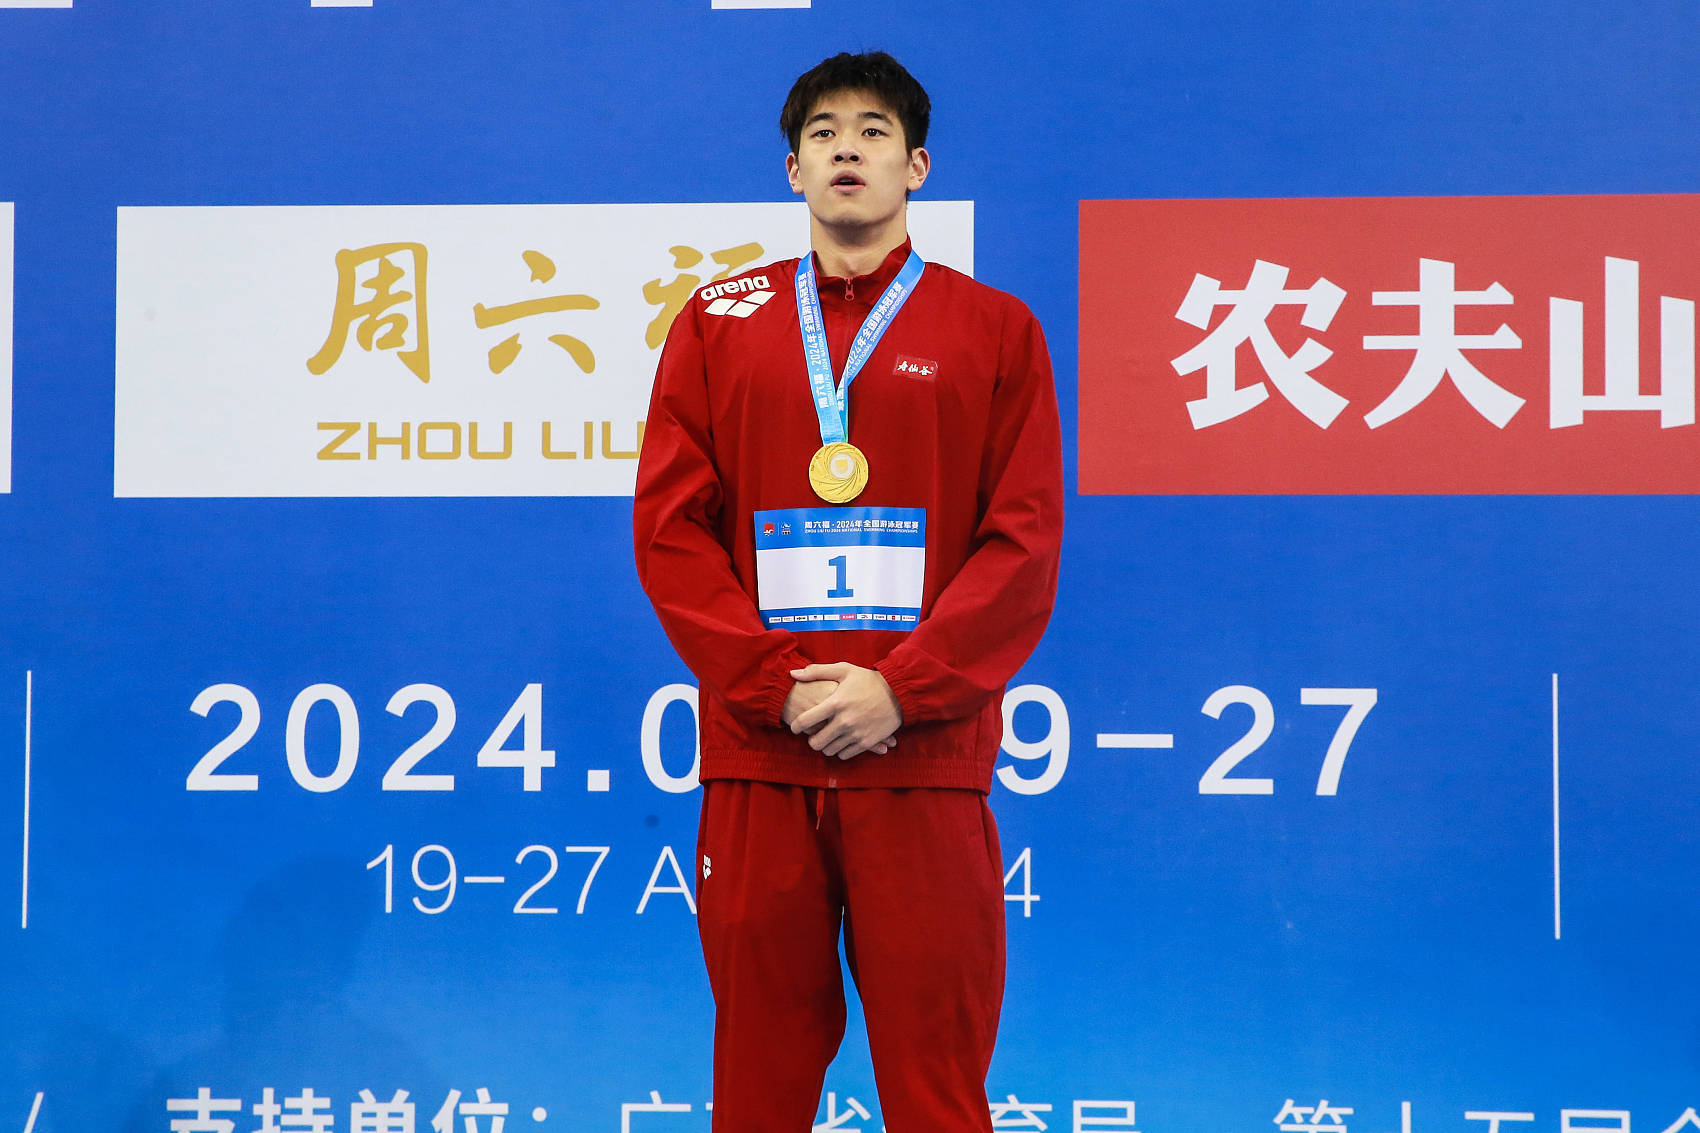 【巴黎奥运·前奏】中国游泳军团迎来新的“黄金一代”